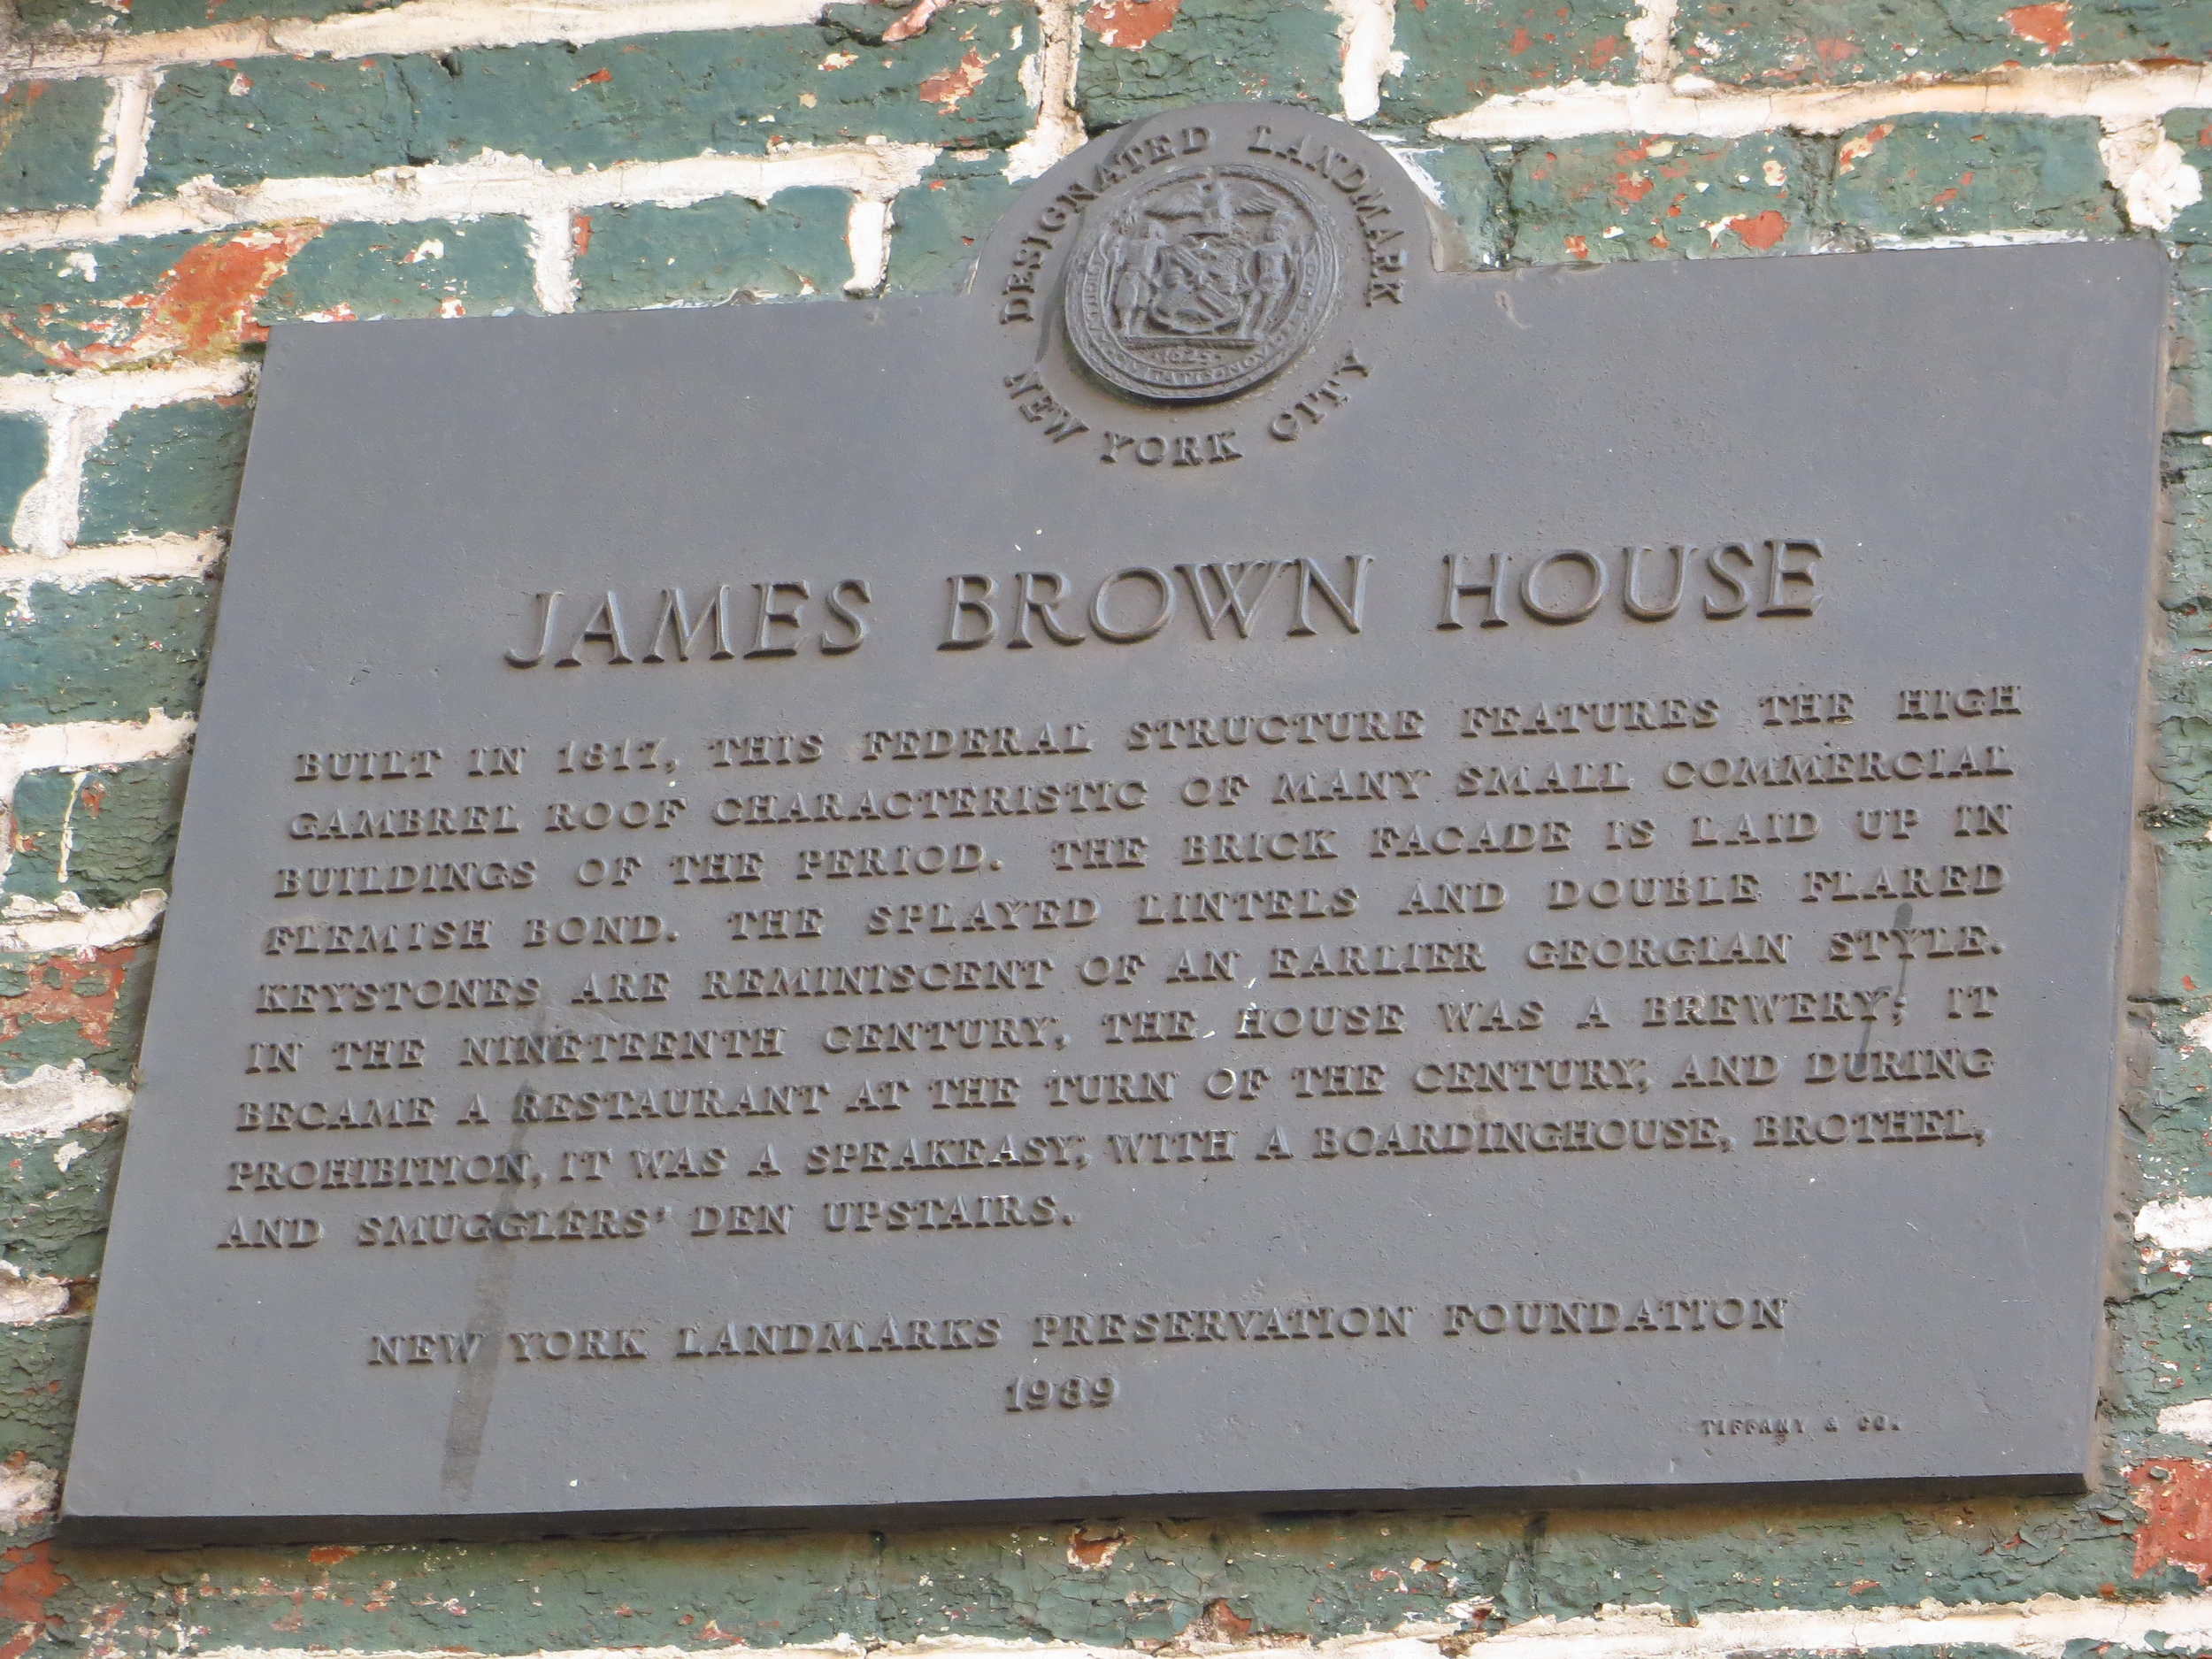 Ear Inn / James Brown House history